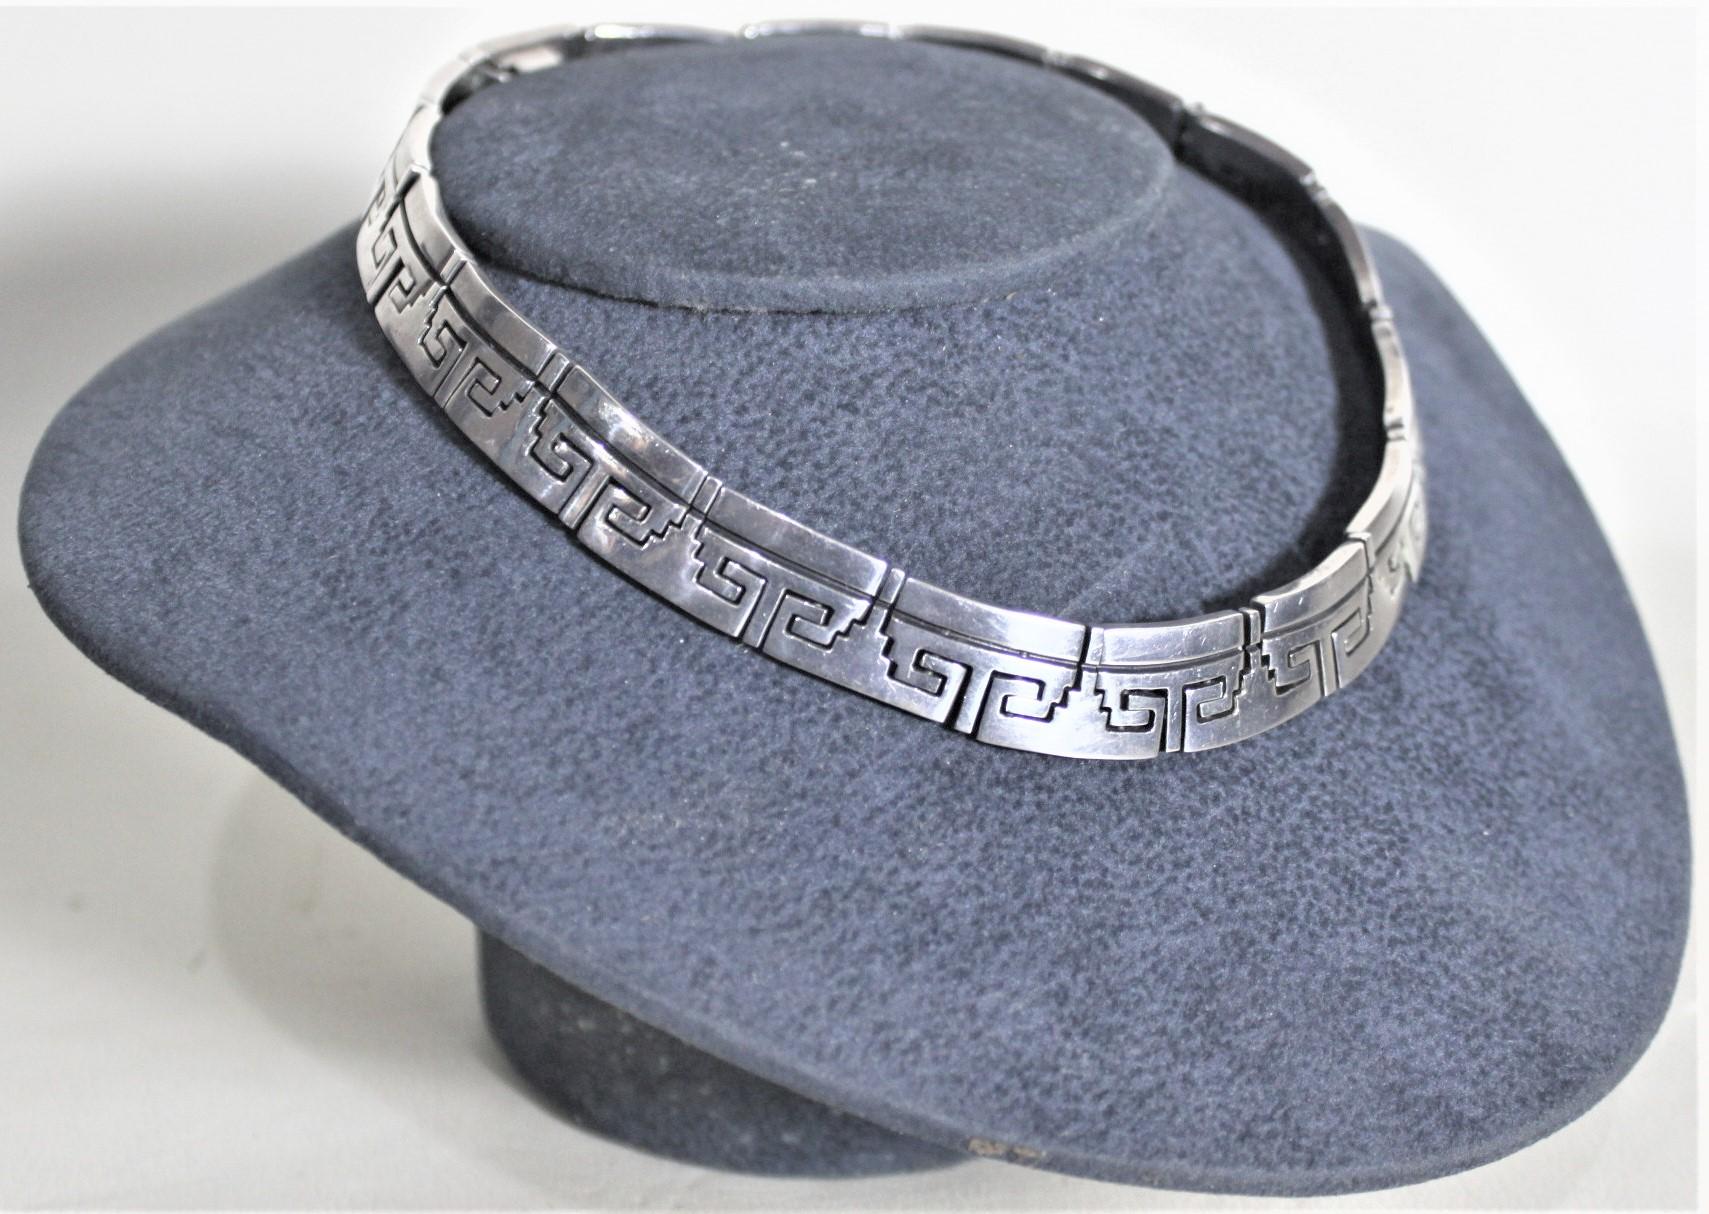 Diese klobige Sterling Silber Damen Halskette wurde in Mexiko in etwa 1970 in einem Mid-Century Modern Stil gemacht. Die dicken Glieder aus Sterlingsilber sind geometrisch in stilisierter Aztekenmanier geformt und haben einige einfache